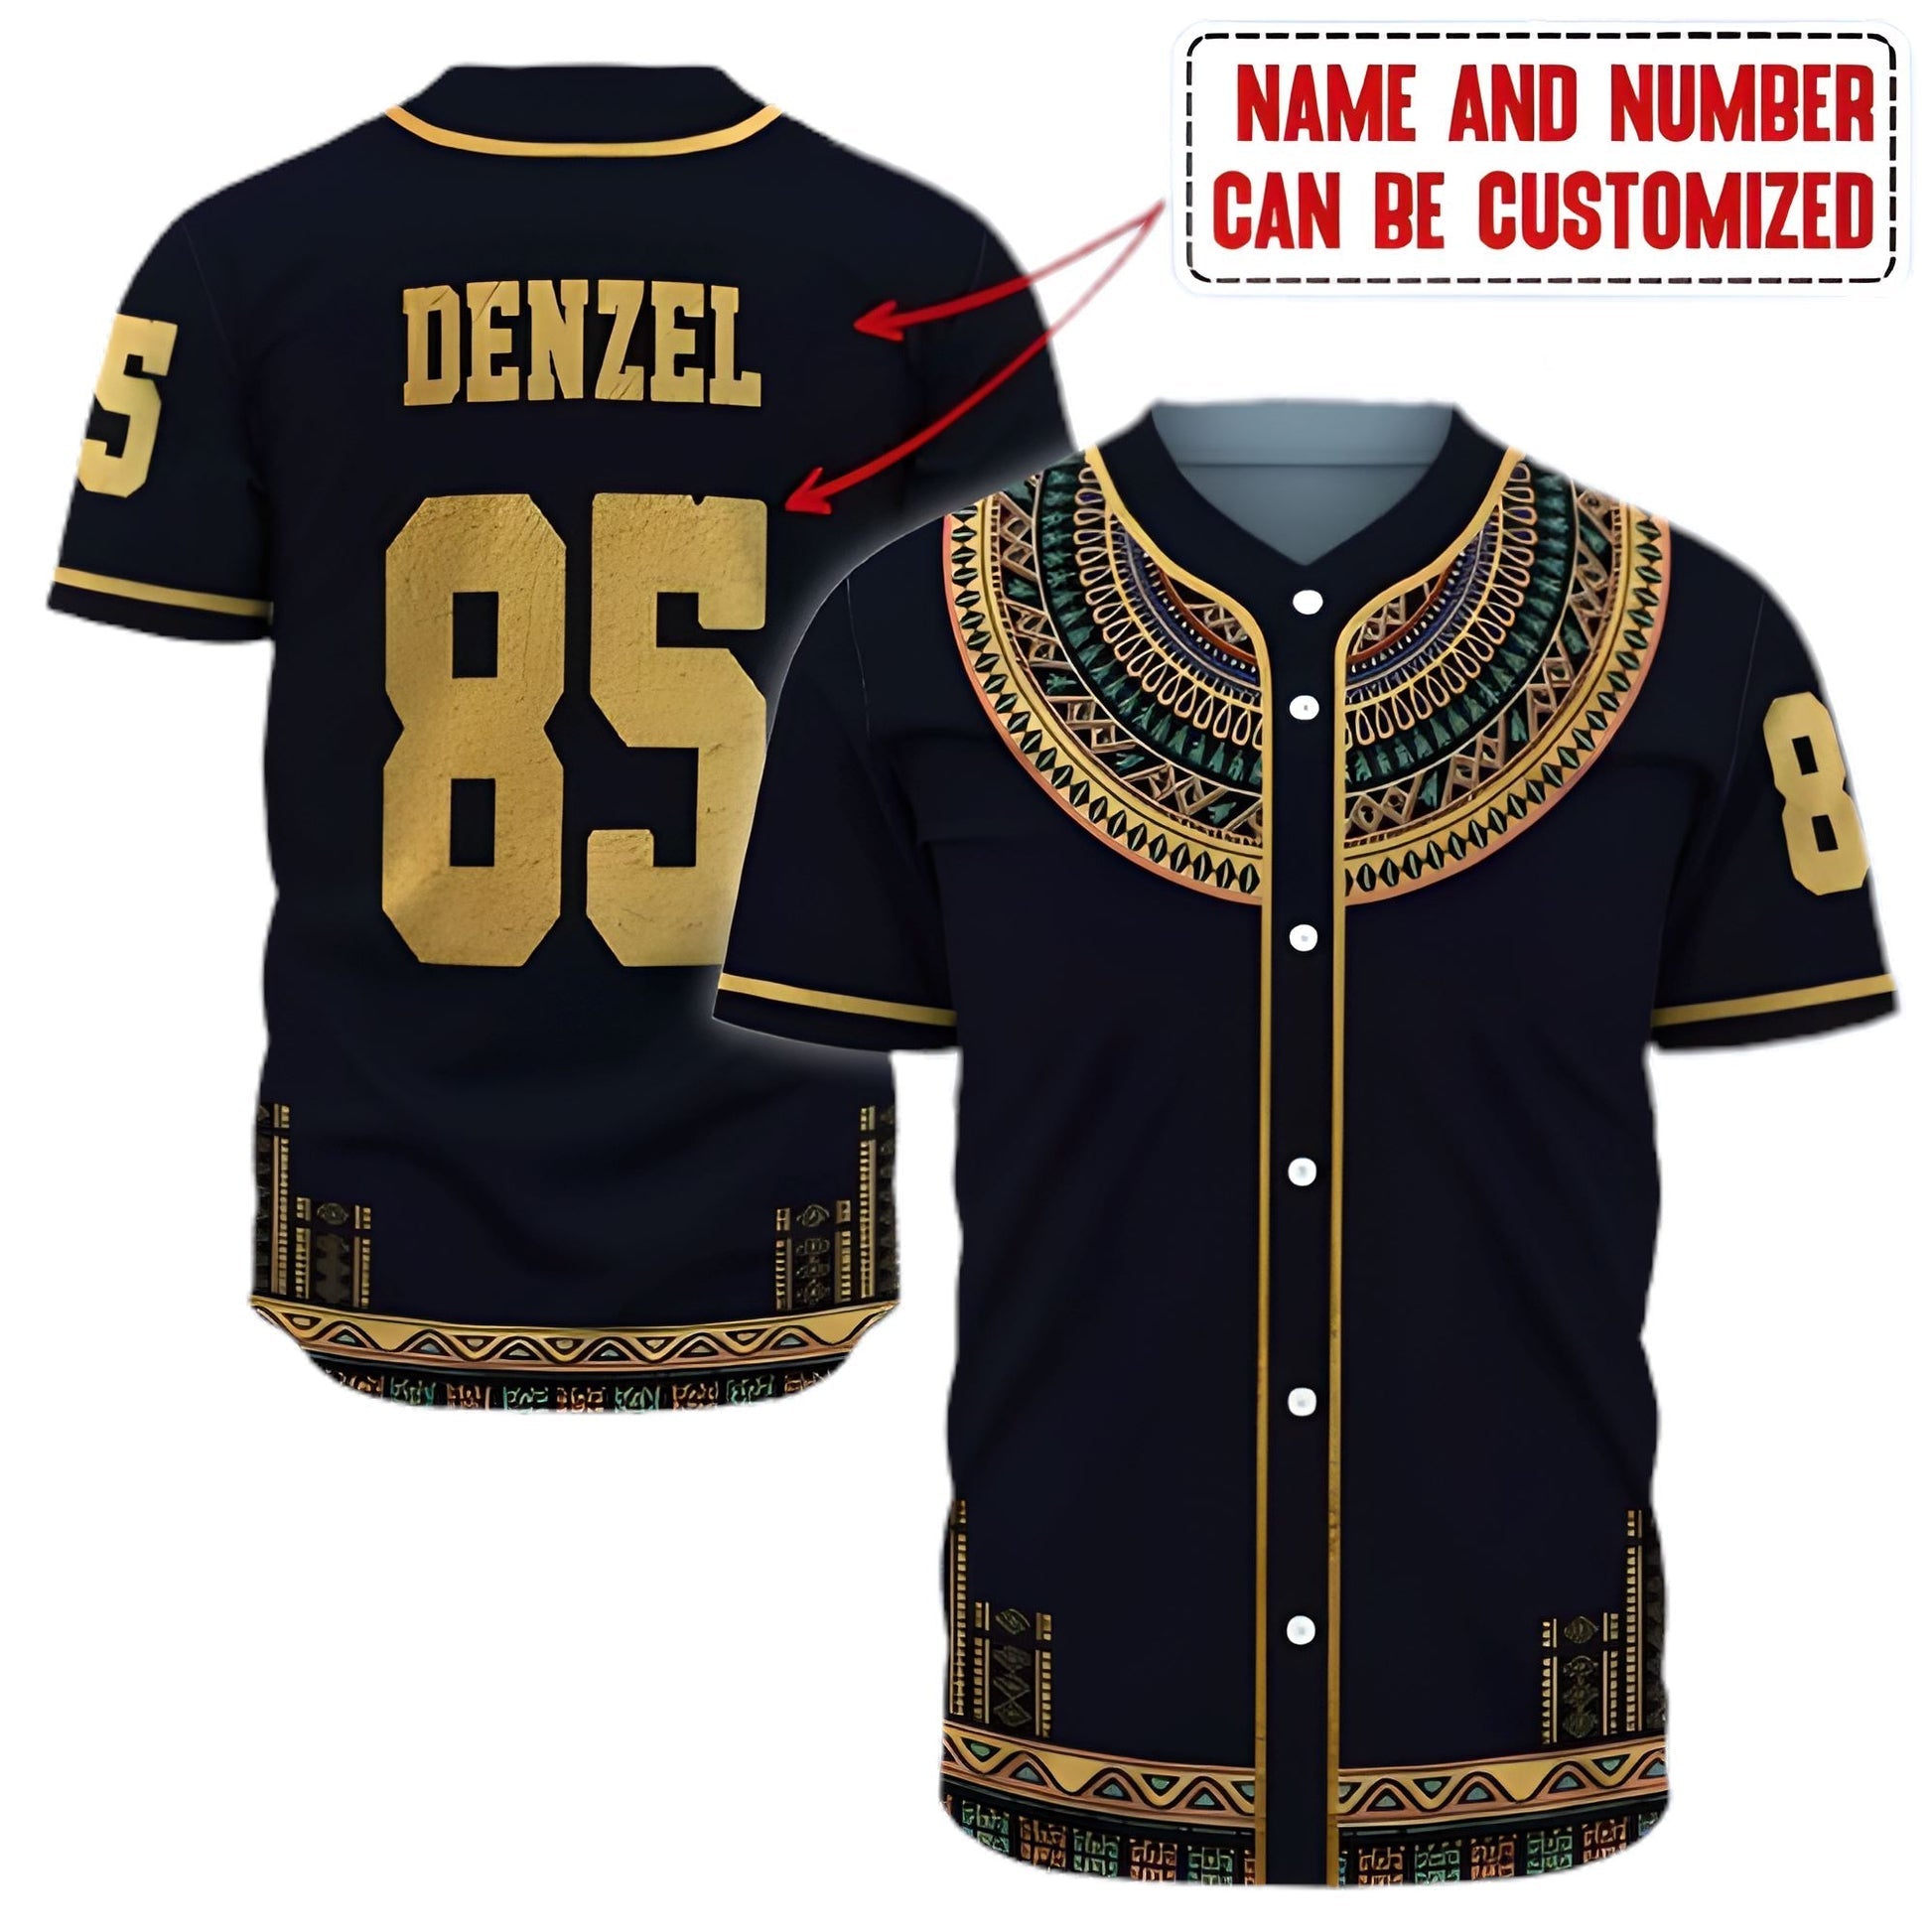 Personalized Dashiki Add/ Juneteenth Shirt - Baseball Tee Jersey Shirt